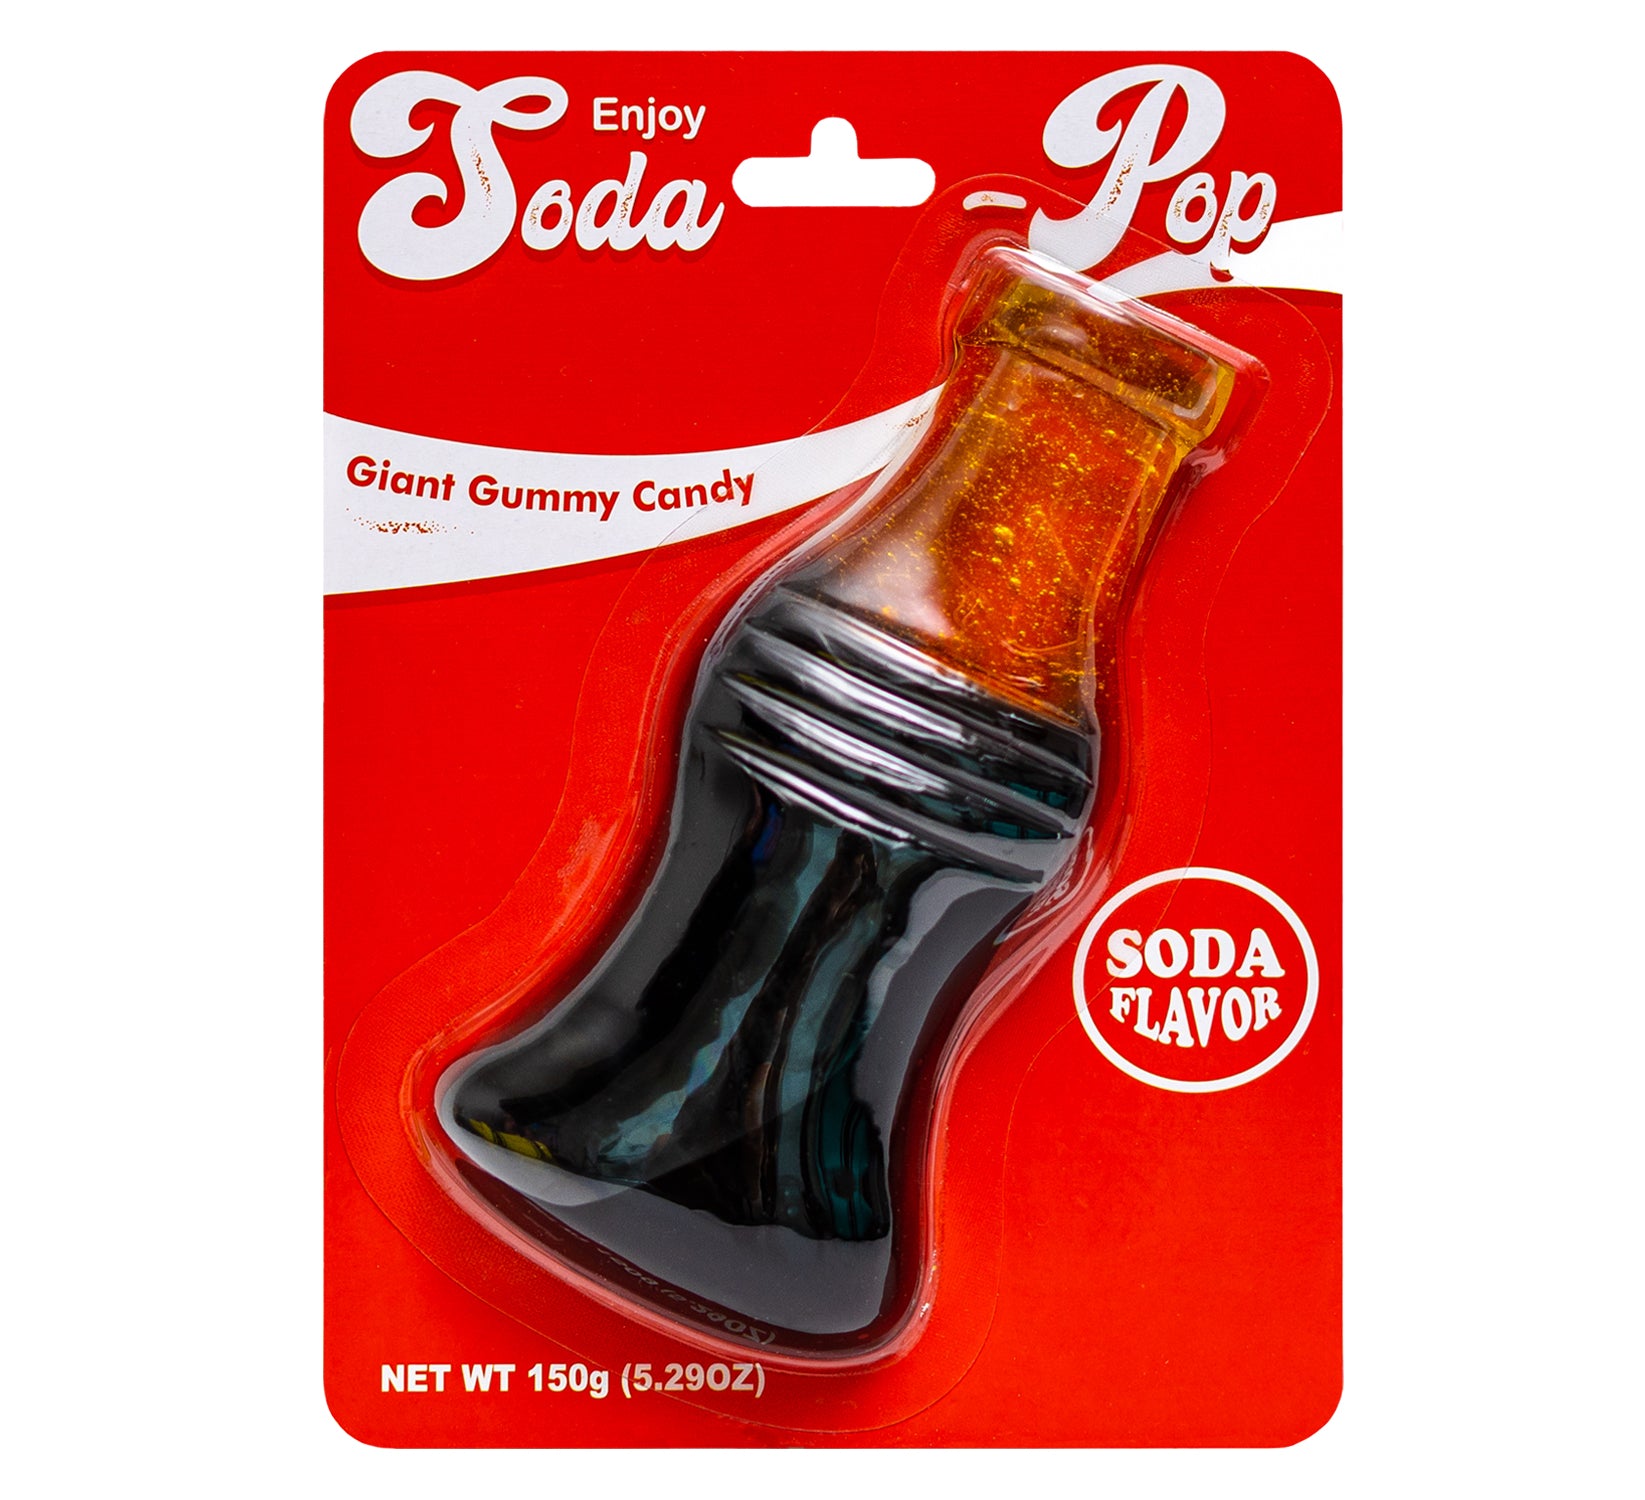 Giant Gummy Soda Pop - 5oz